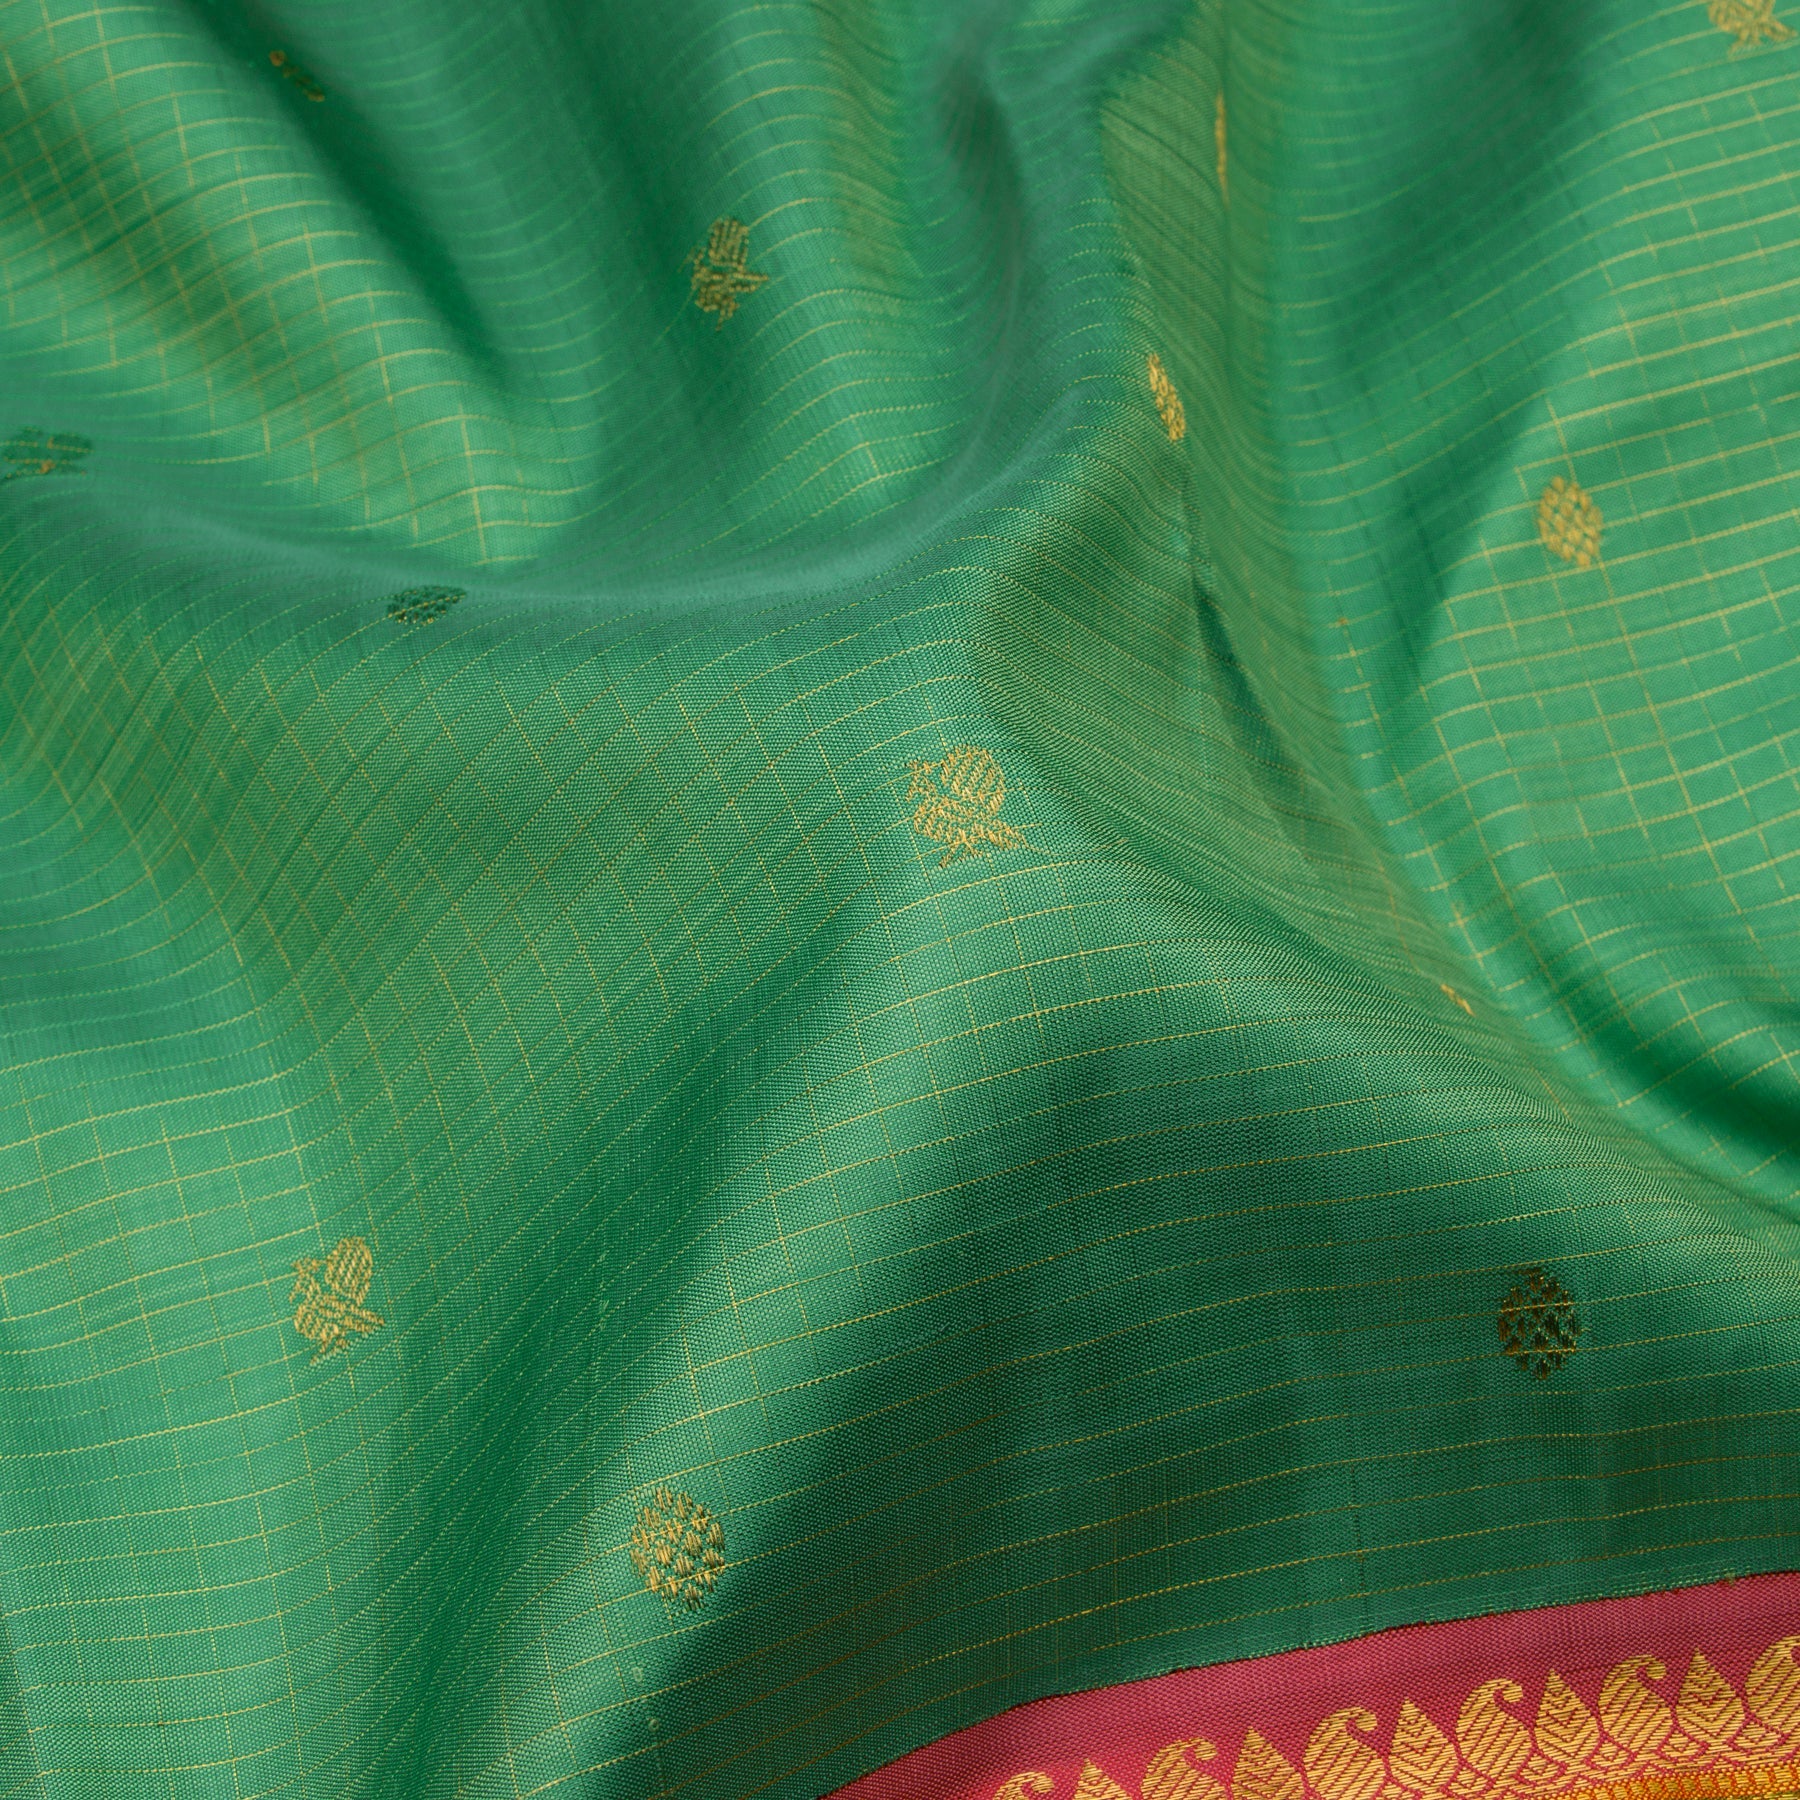 Kanakavalli Kanjivaram Silk Sari 23-110-HS001-11486 - Fabric View